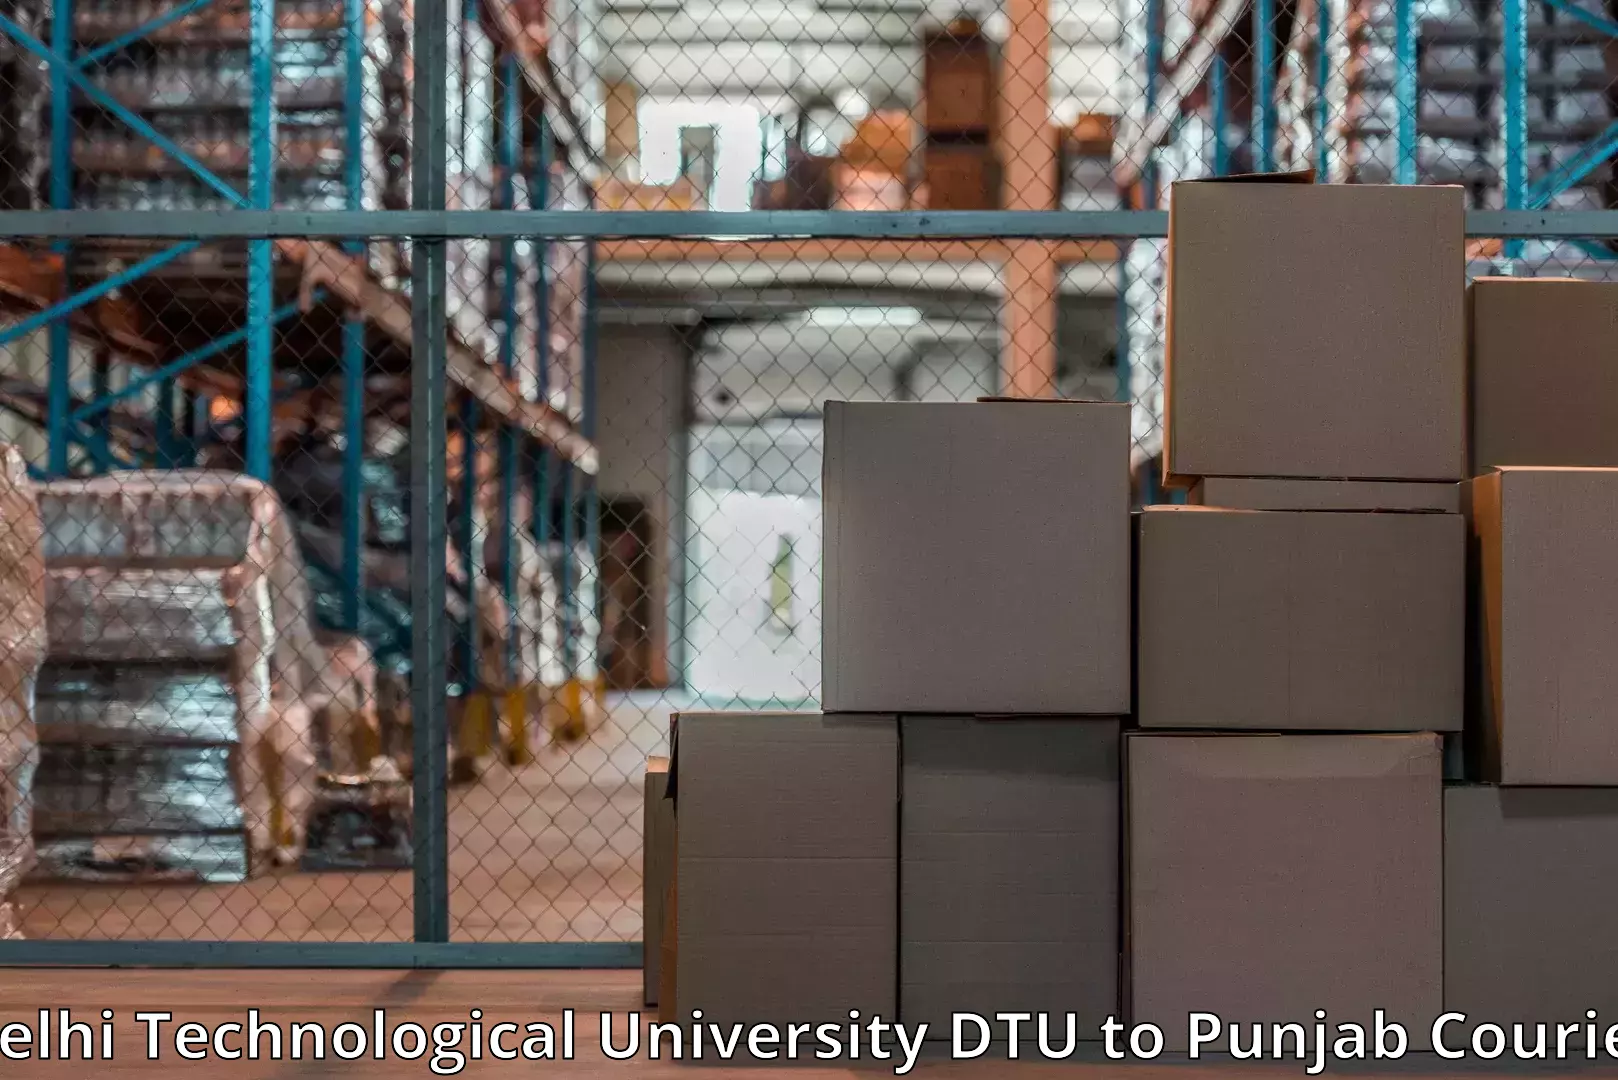 Furniture handling services Delhi Technological University DTU to Punjab